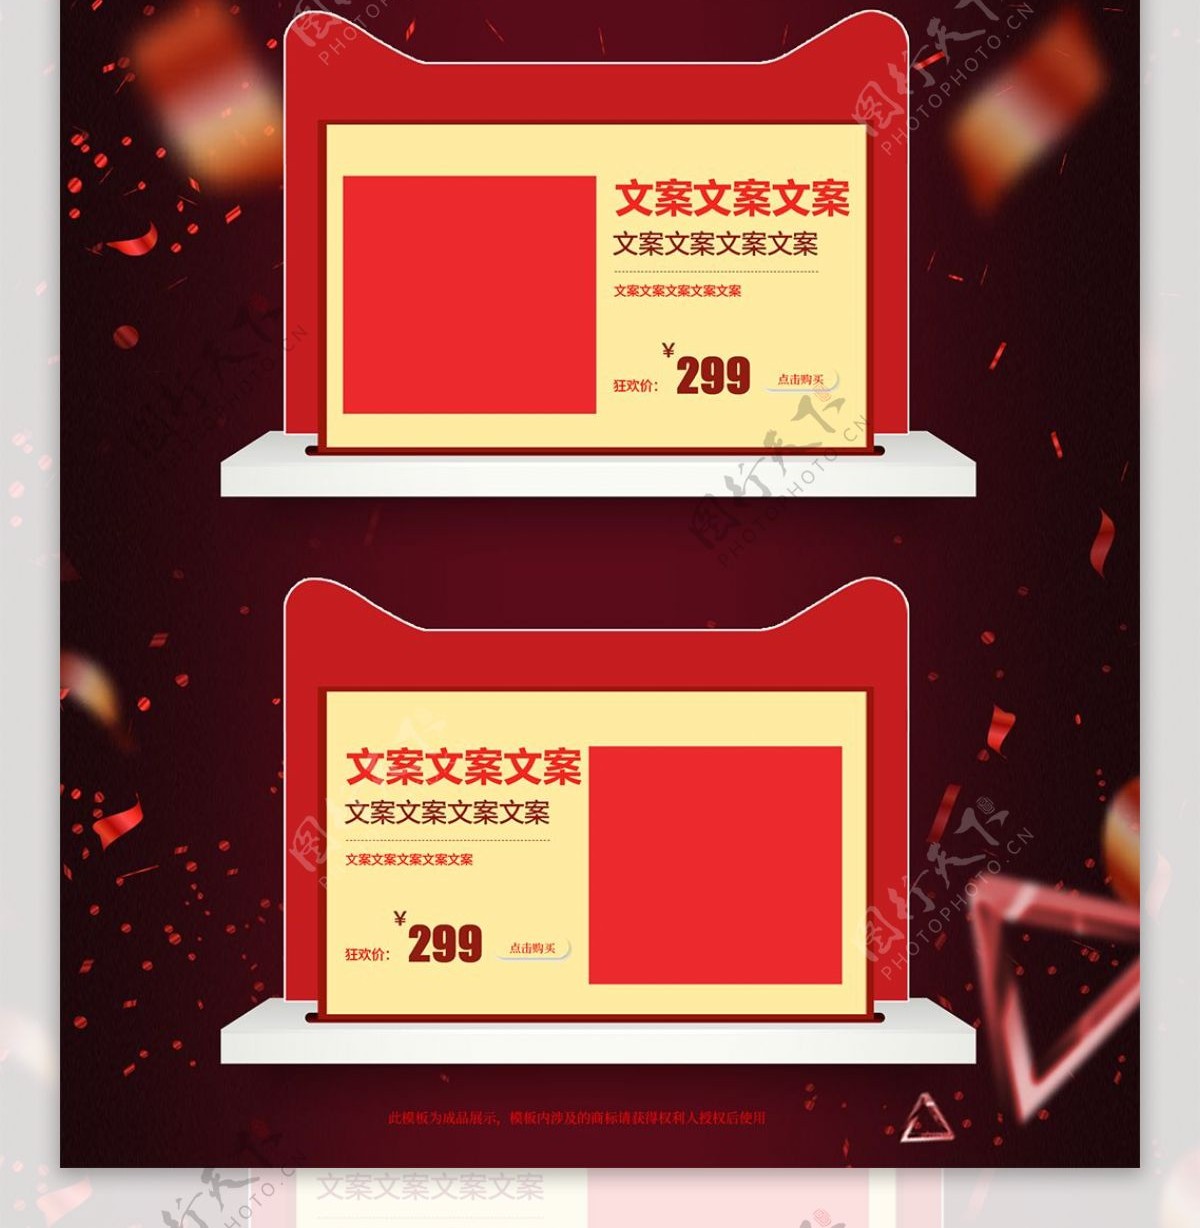 双十二狂欢酷炫红色数码家电首页模板